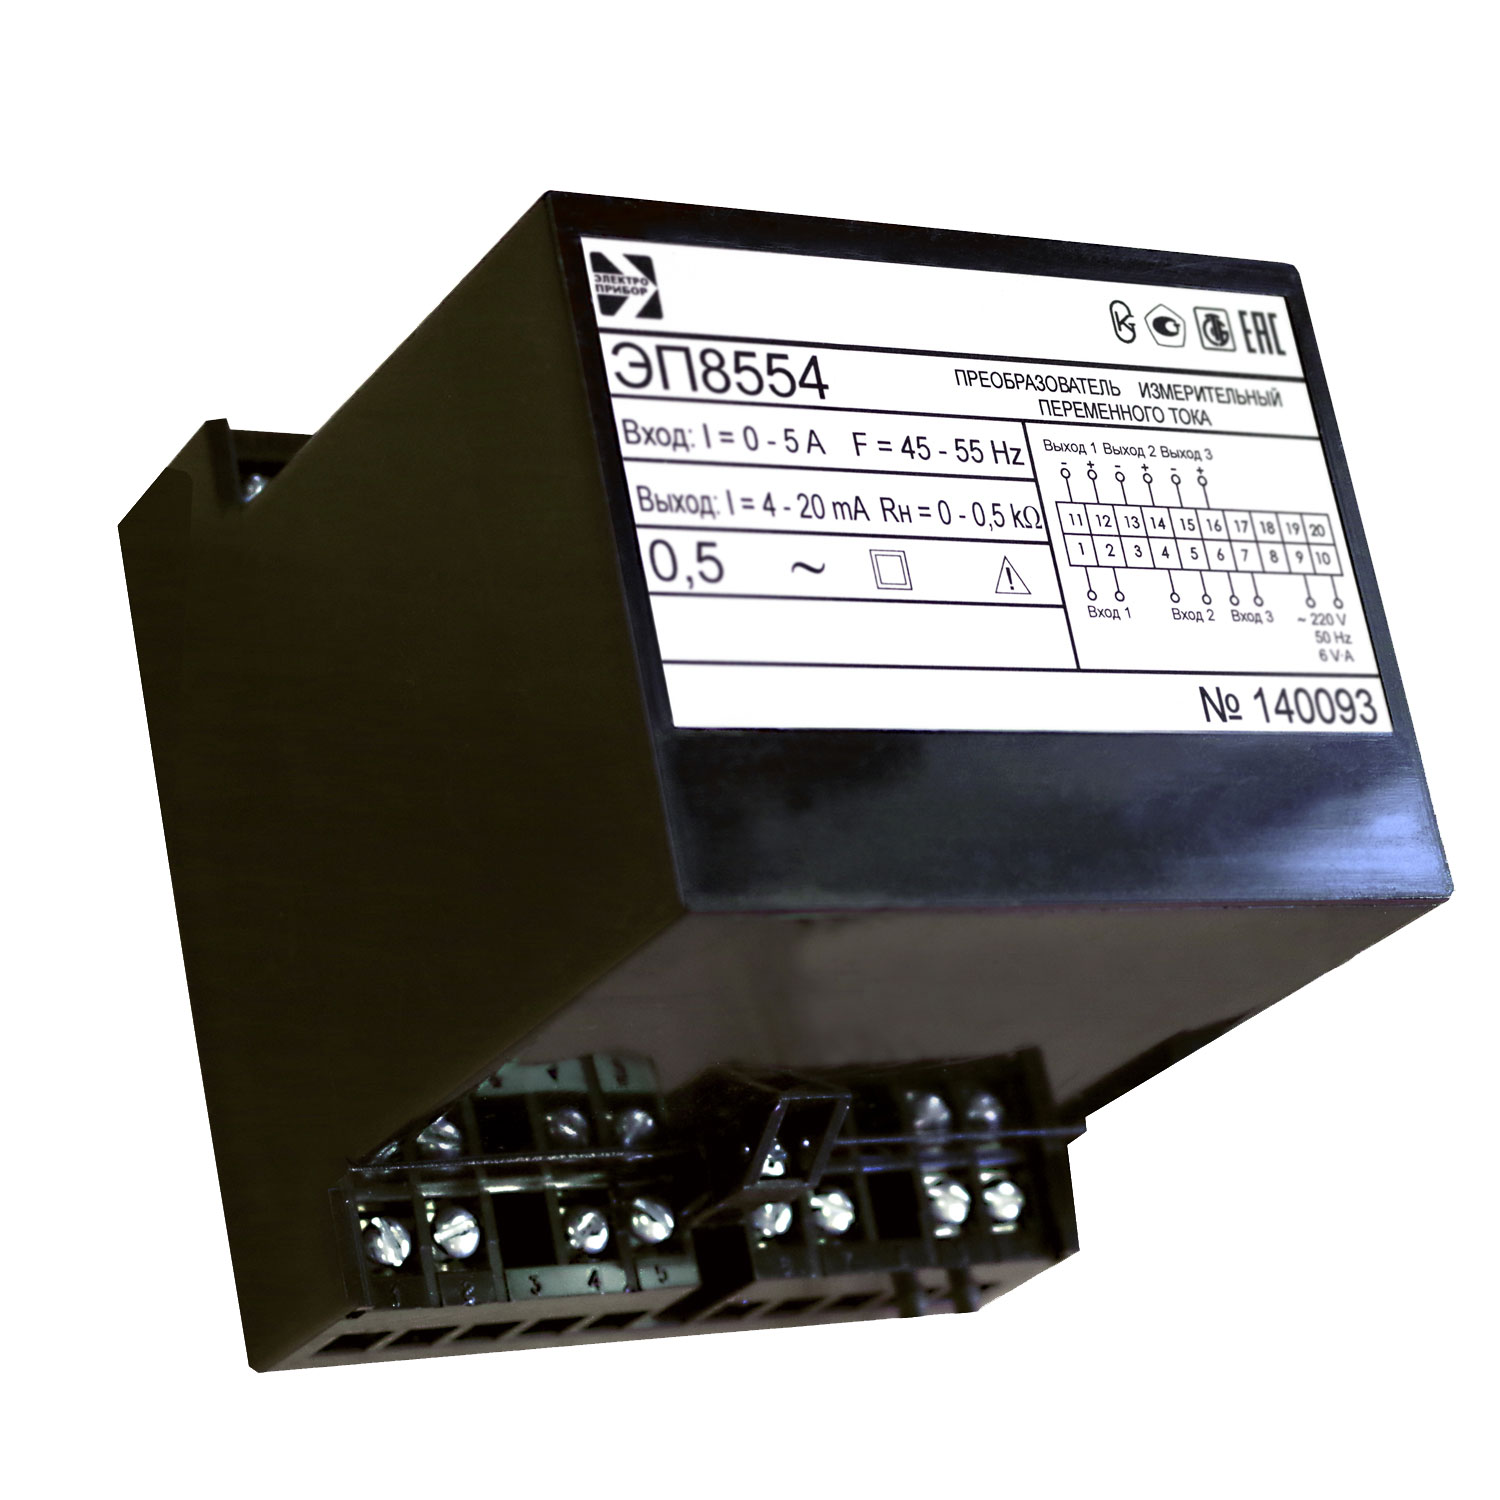 ЭП8554 — преобразователи измерительные переменного тока ЭП8554